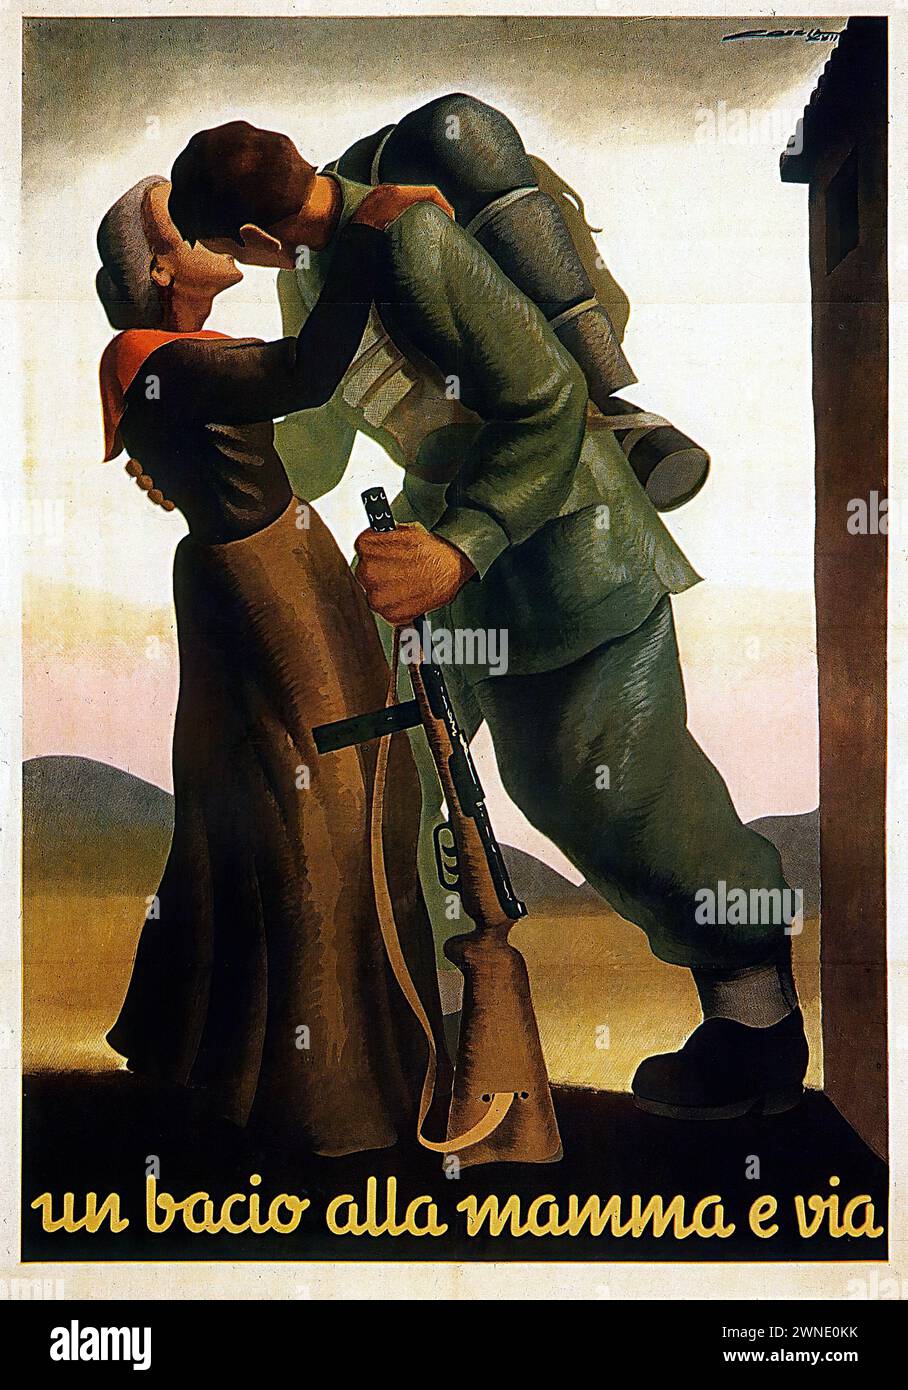 „un bacio alla mamma e Via“ [„ein Kuss an die Mutter und los“] italienische Vintage-Werbung, in der ein Soldat seine Mutter auf Wiedersehen küsst, was den Abschied in den Krieg bedeutet. Das Bild hat einen ergreifenden, realistischen Stil mit gedämpften Erdtönen und emotionalen Inhalten. Stockfoto